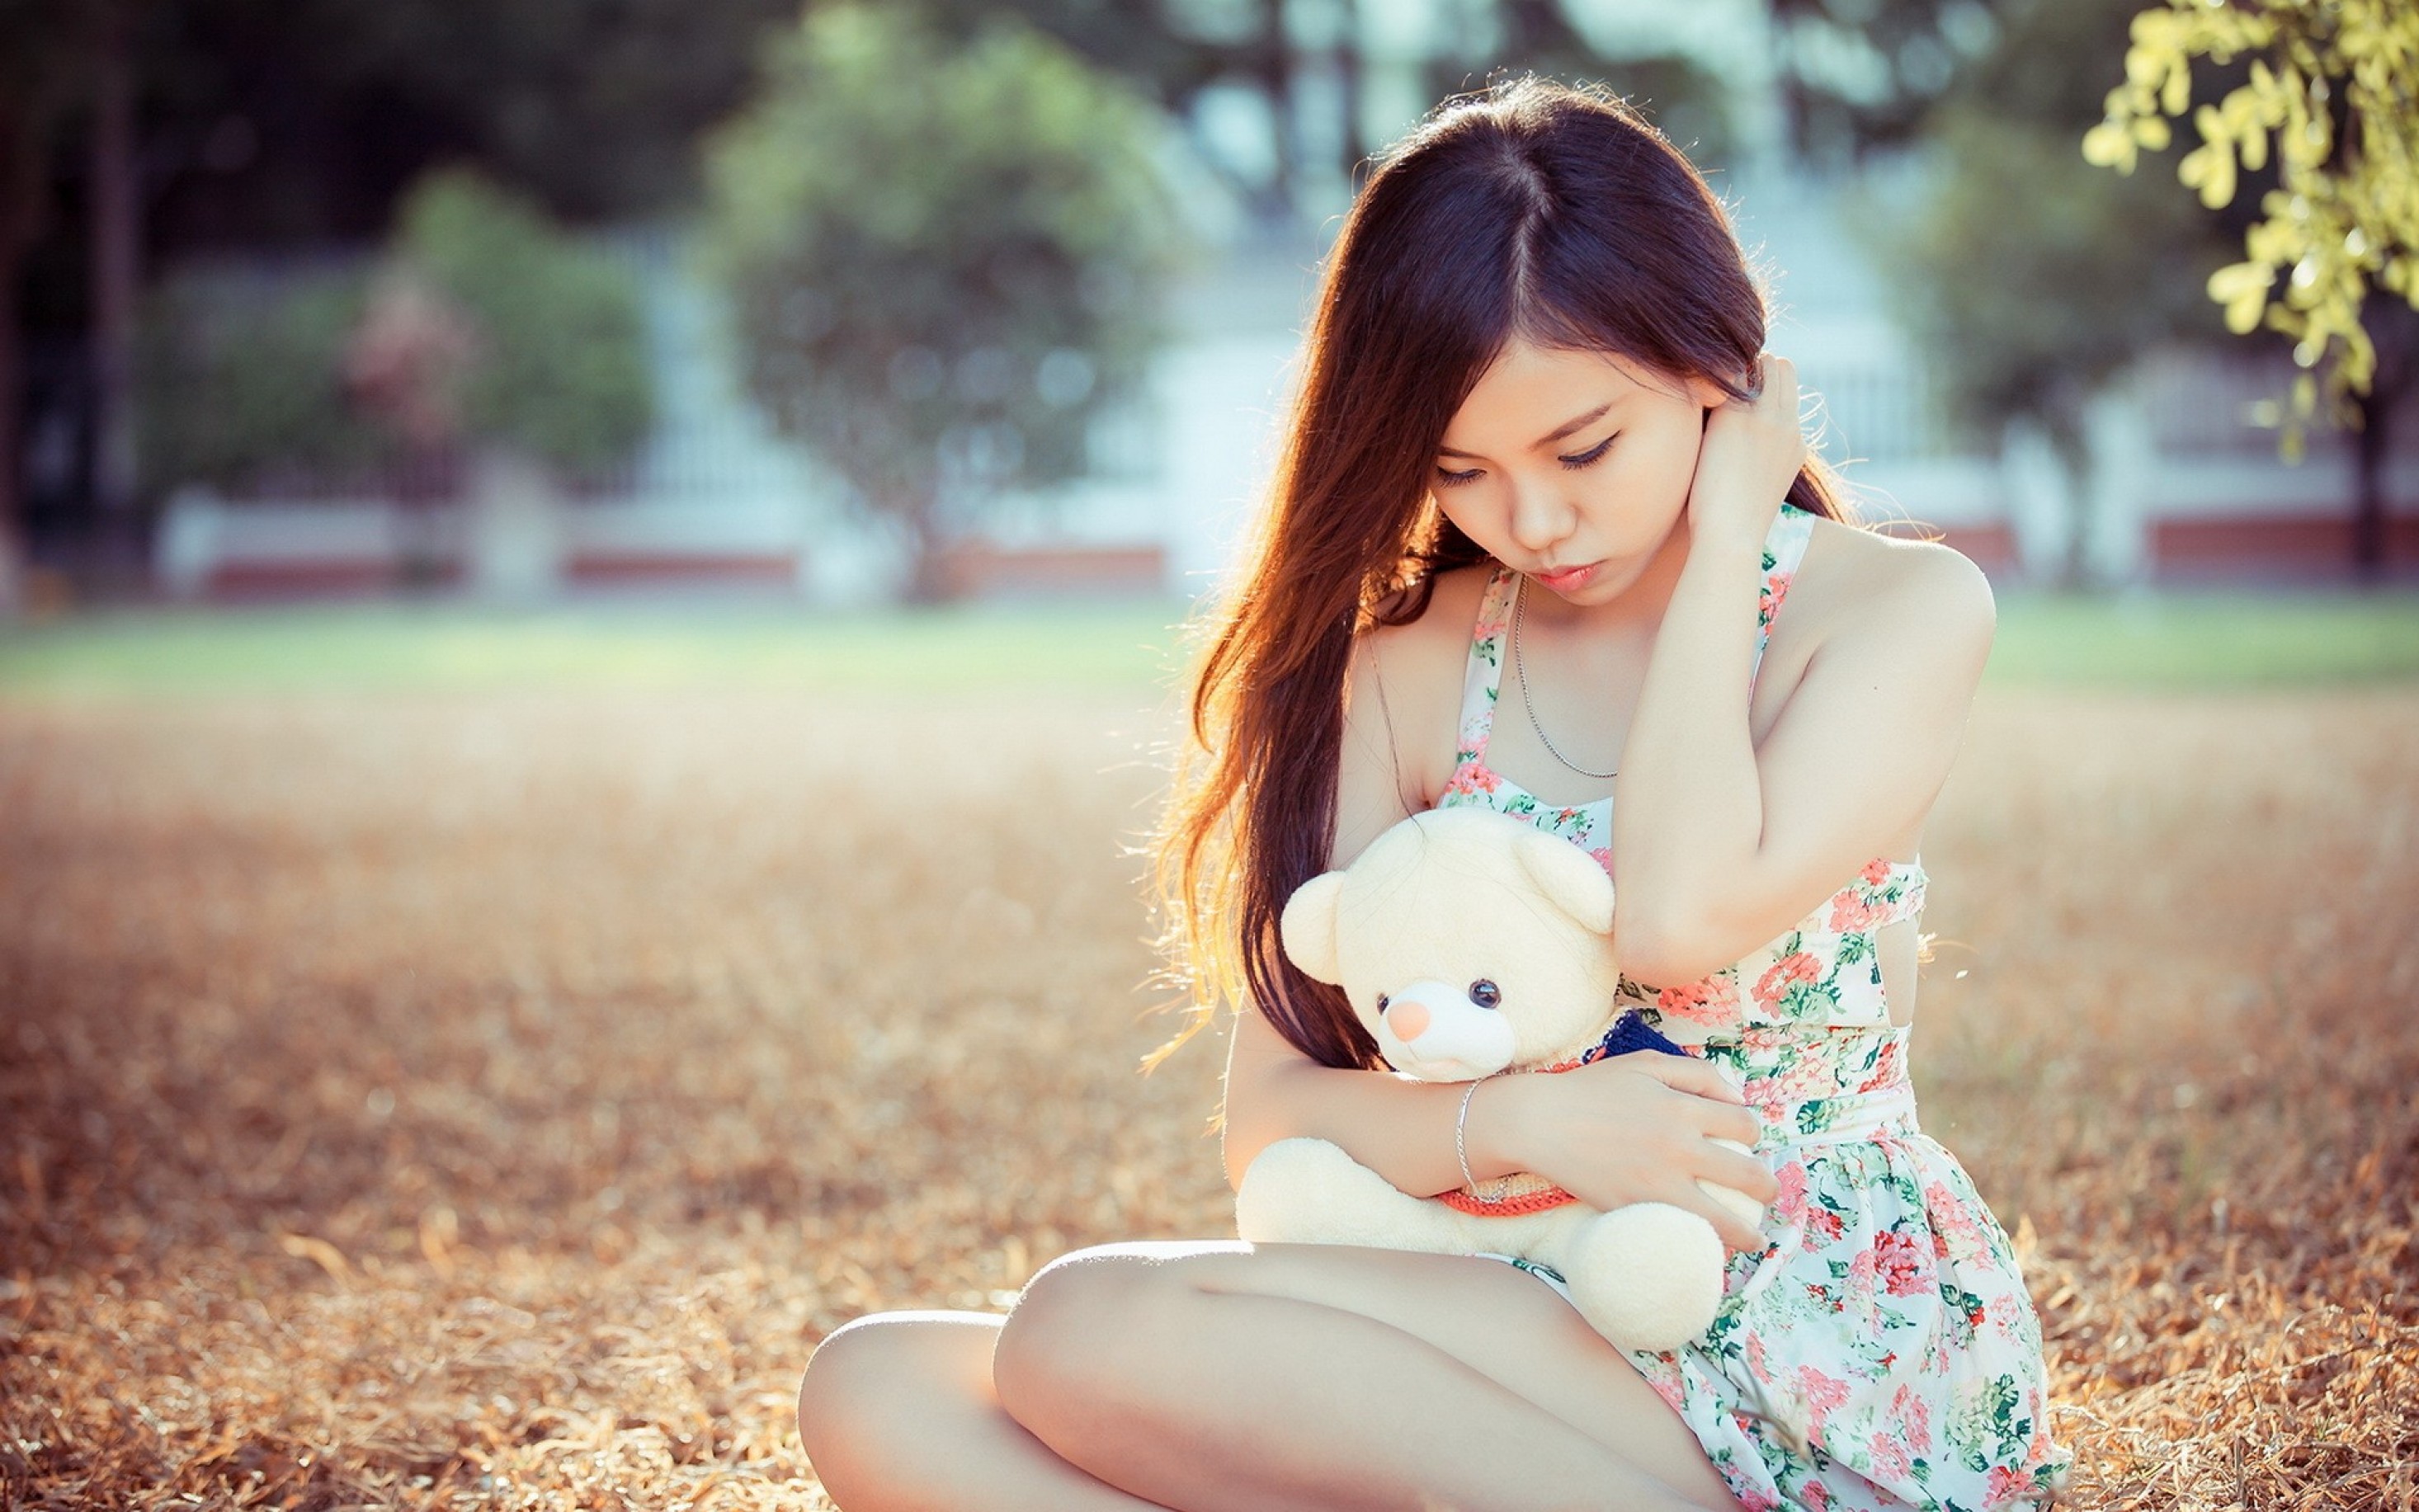 Asian teen girl with teddy bear.